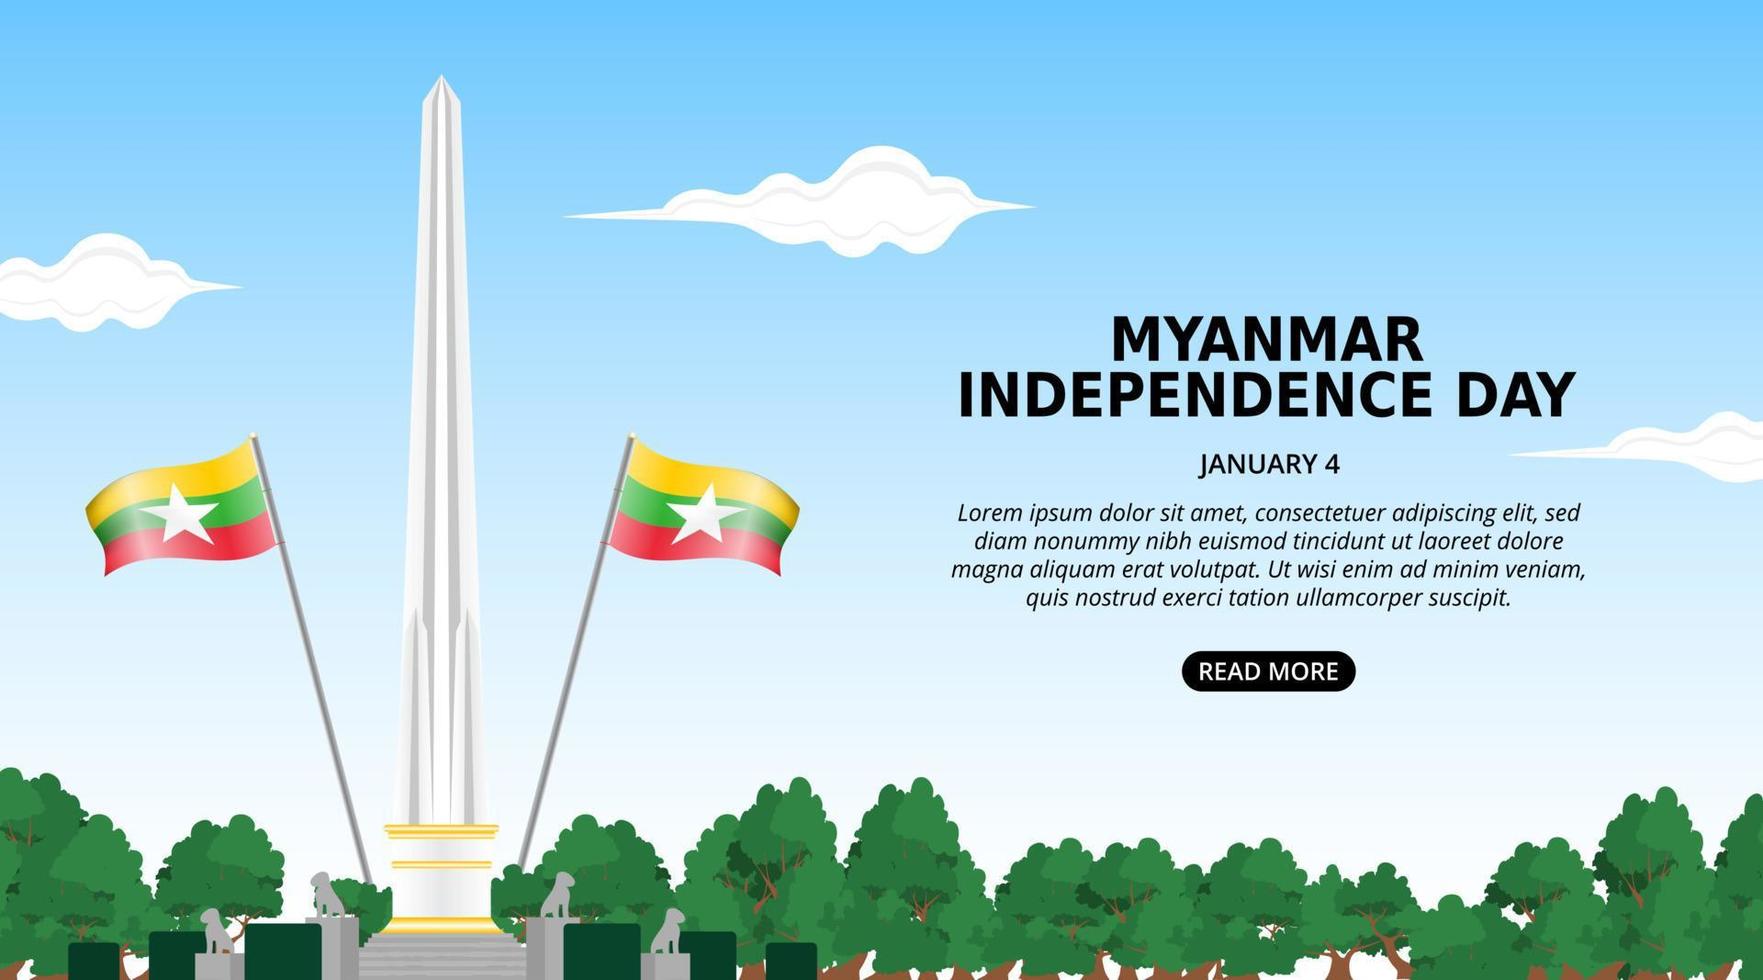 fond de fête de l'indépendance du myanmar avec jardin du monument de l'indépendance et drapeau ondulant vecteur